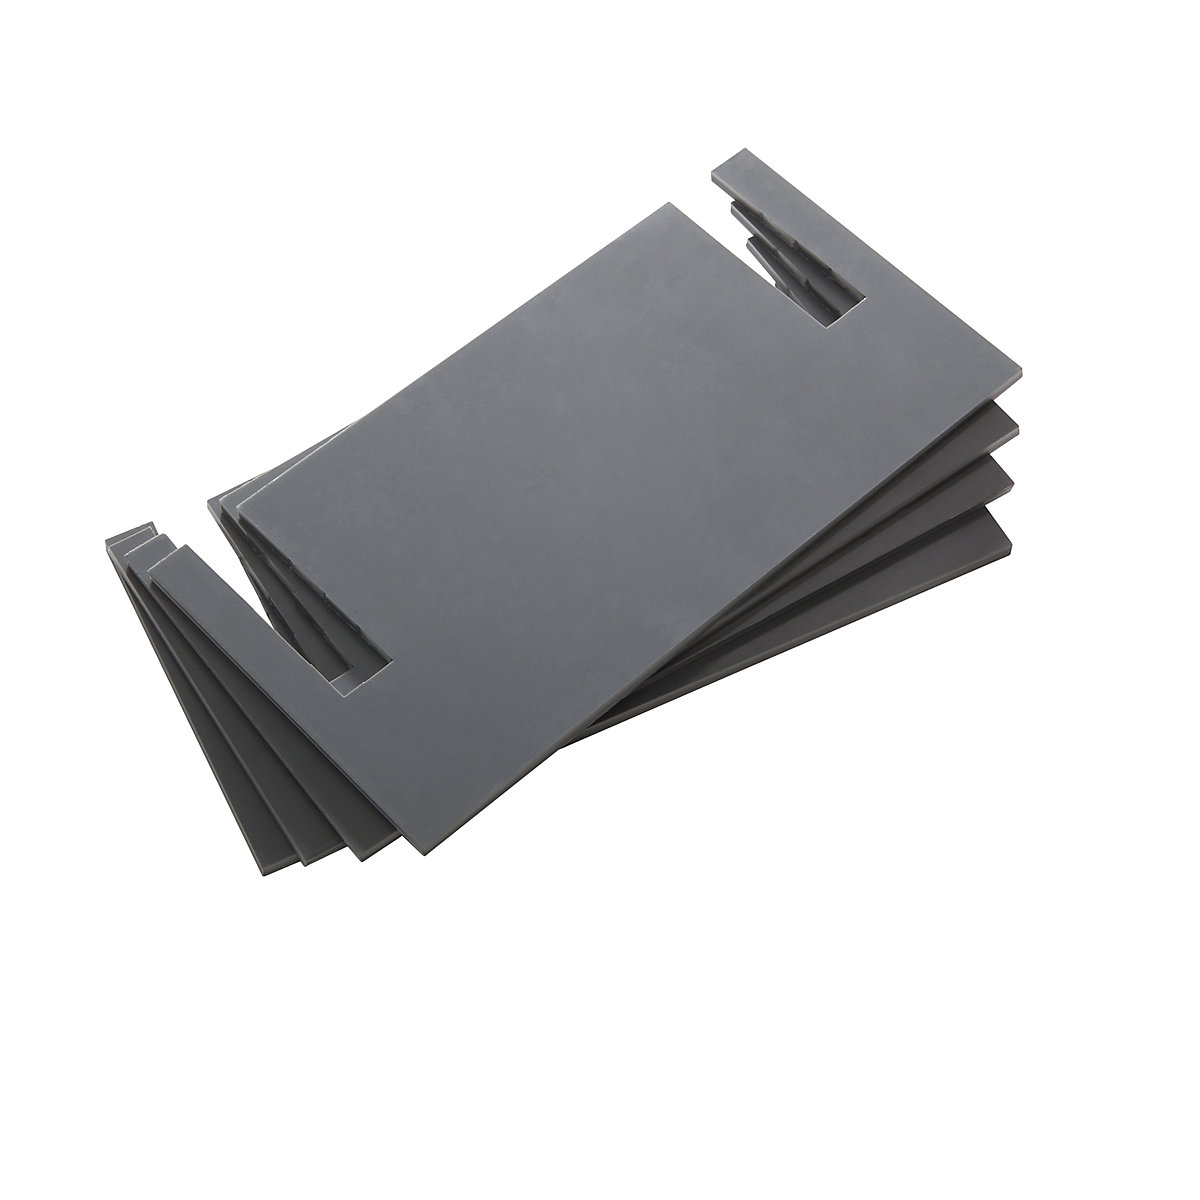 Plaques de mise à niveau – LISTA, PVC, gris, lot de 4, épaisseur 4 mm-3